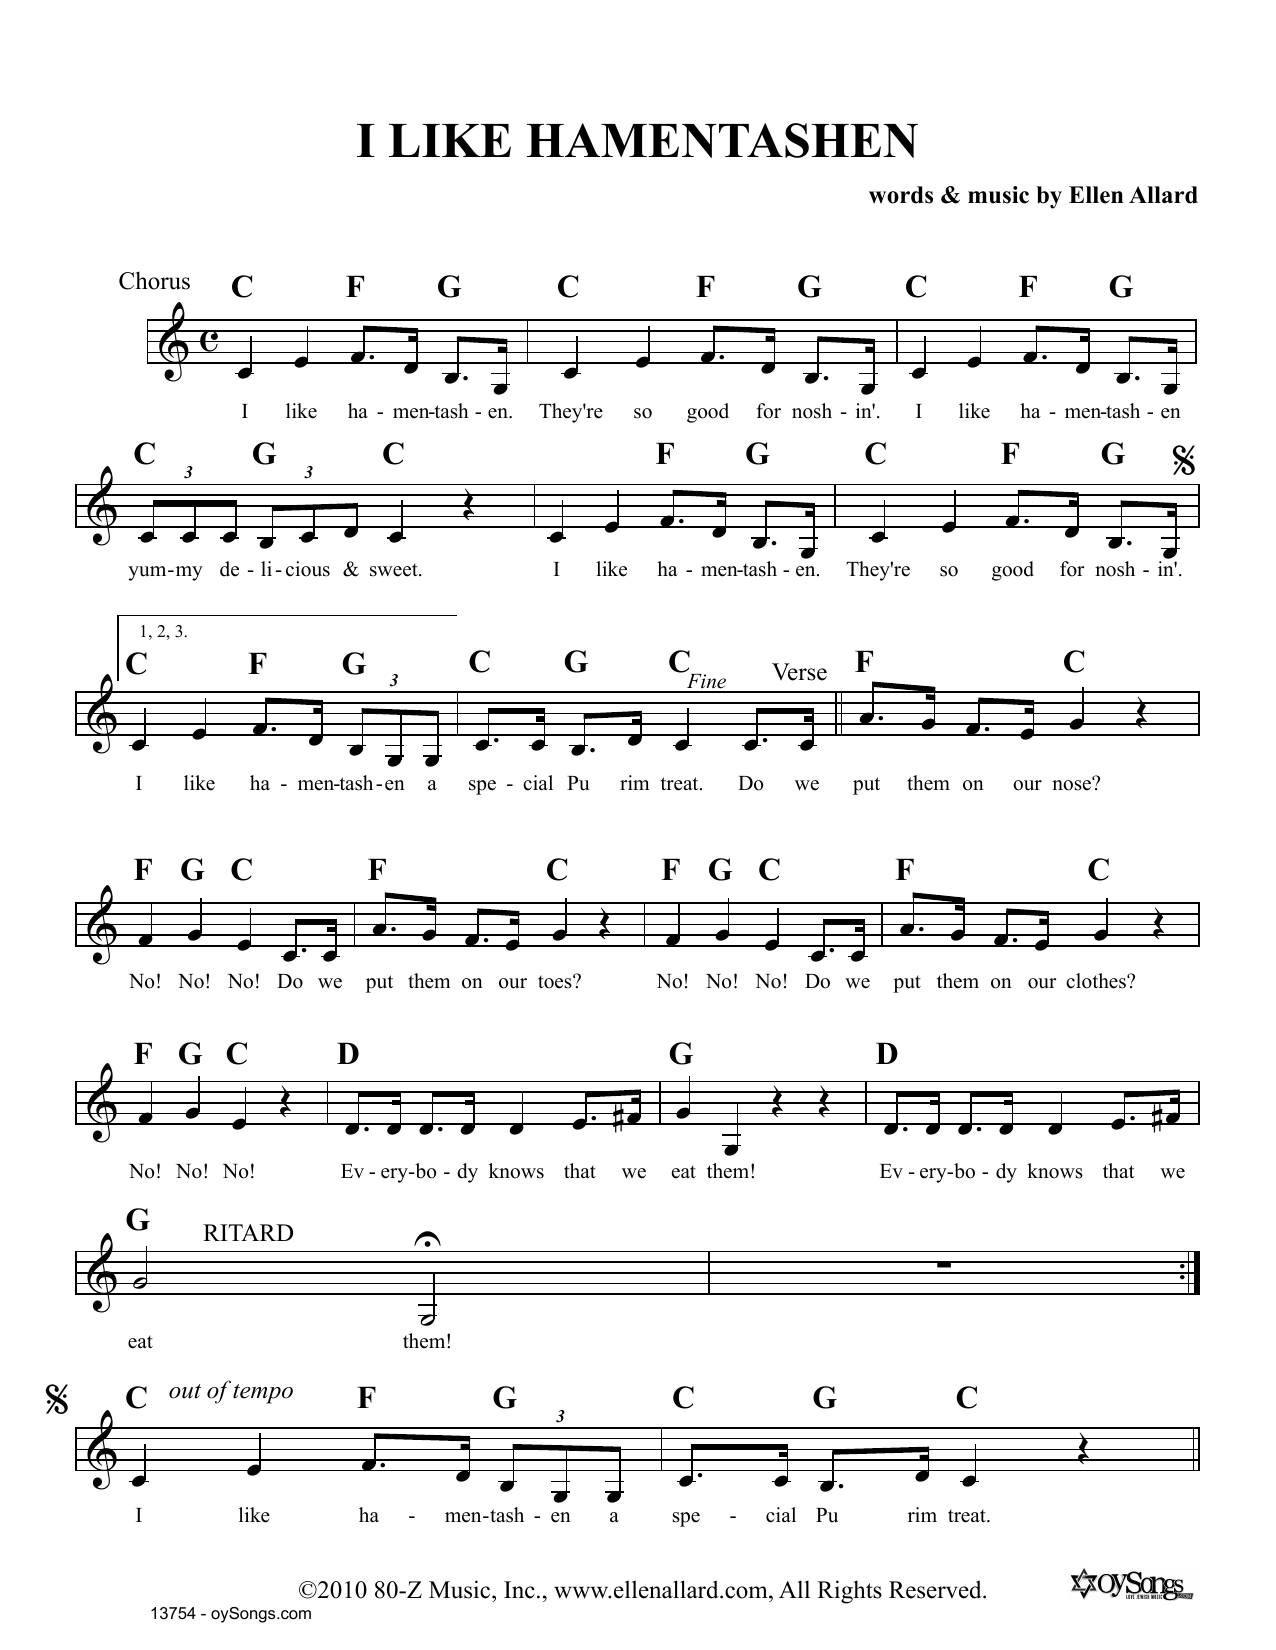 Ellen Allard I Like Hamentashen Sheet Music Notes & Chords for Melody Line, Lyrics & Chords - Download or Print PDF